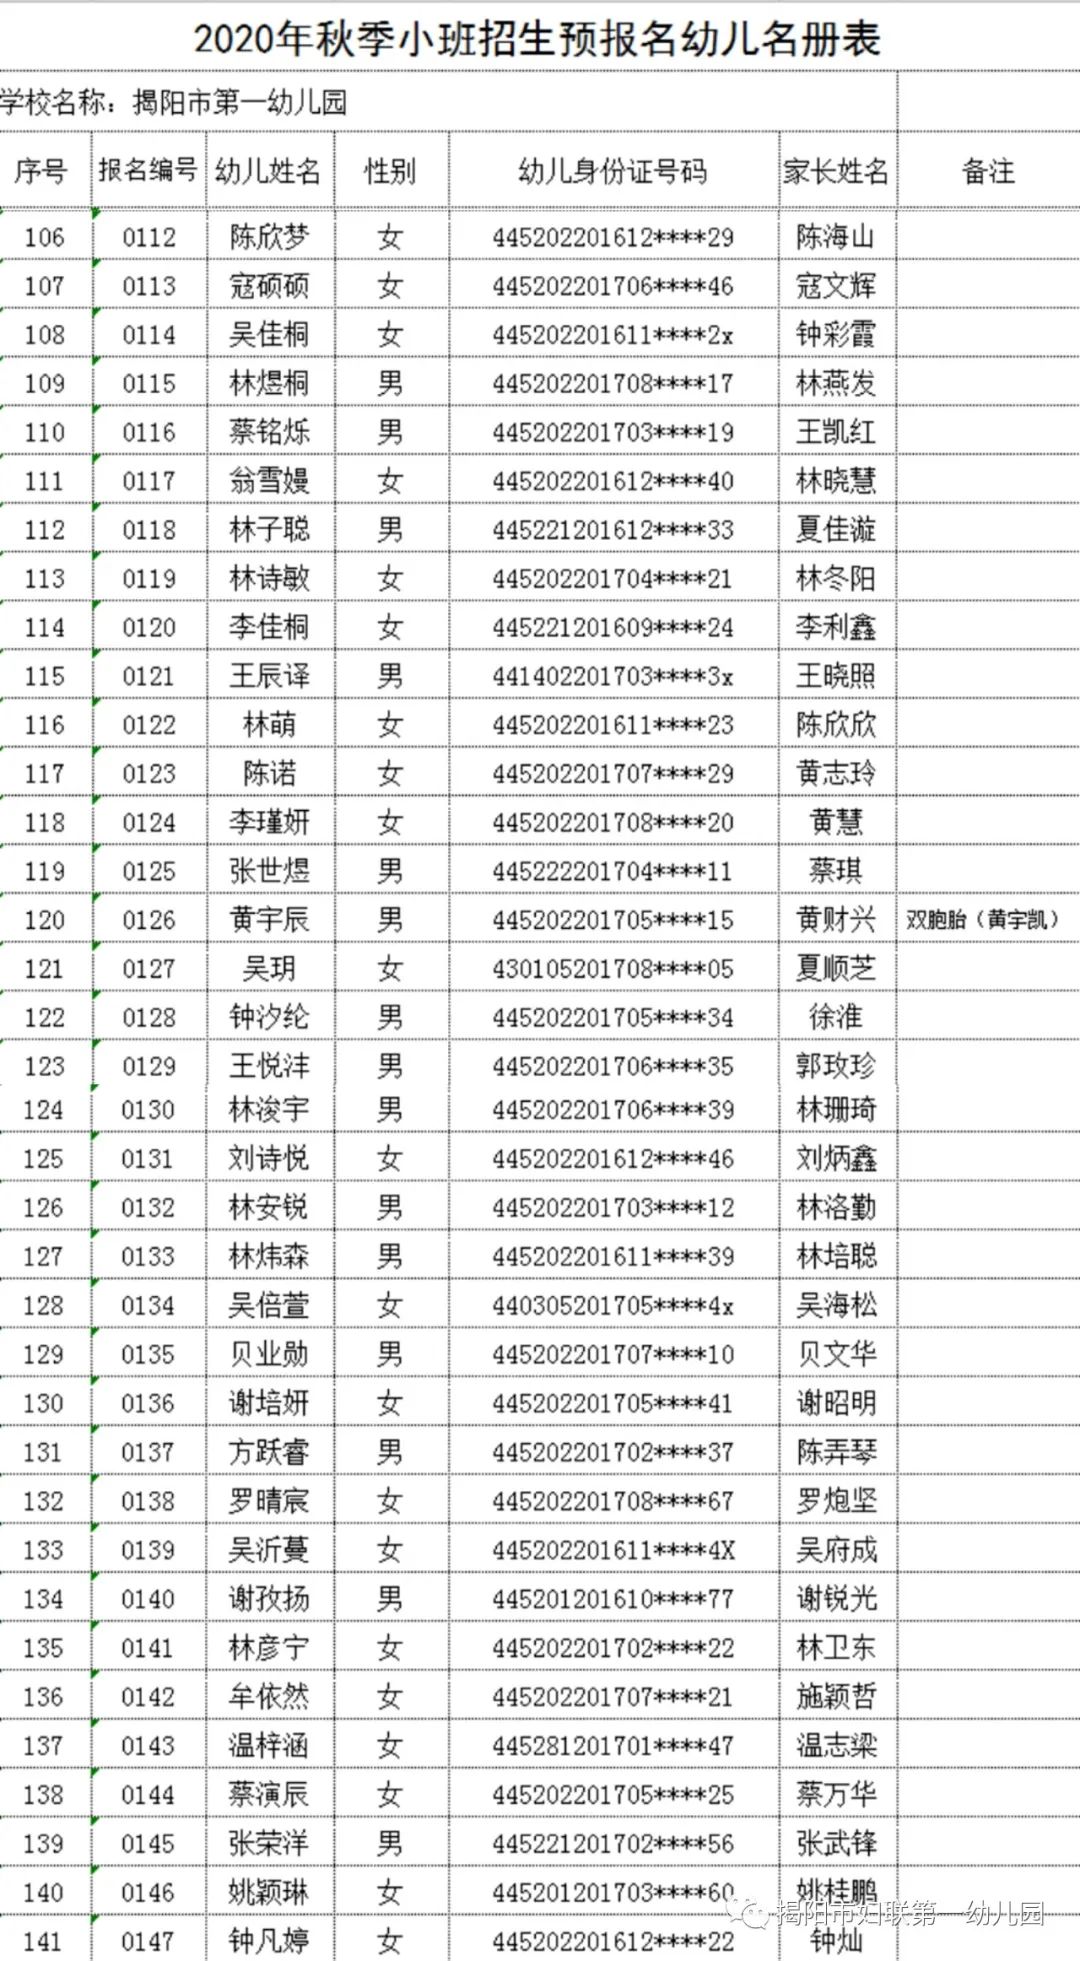 揭阳市第一幼儿园2020年秋季小班招生 预报名幼儿名单公布